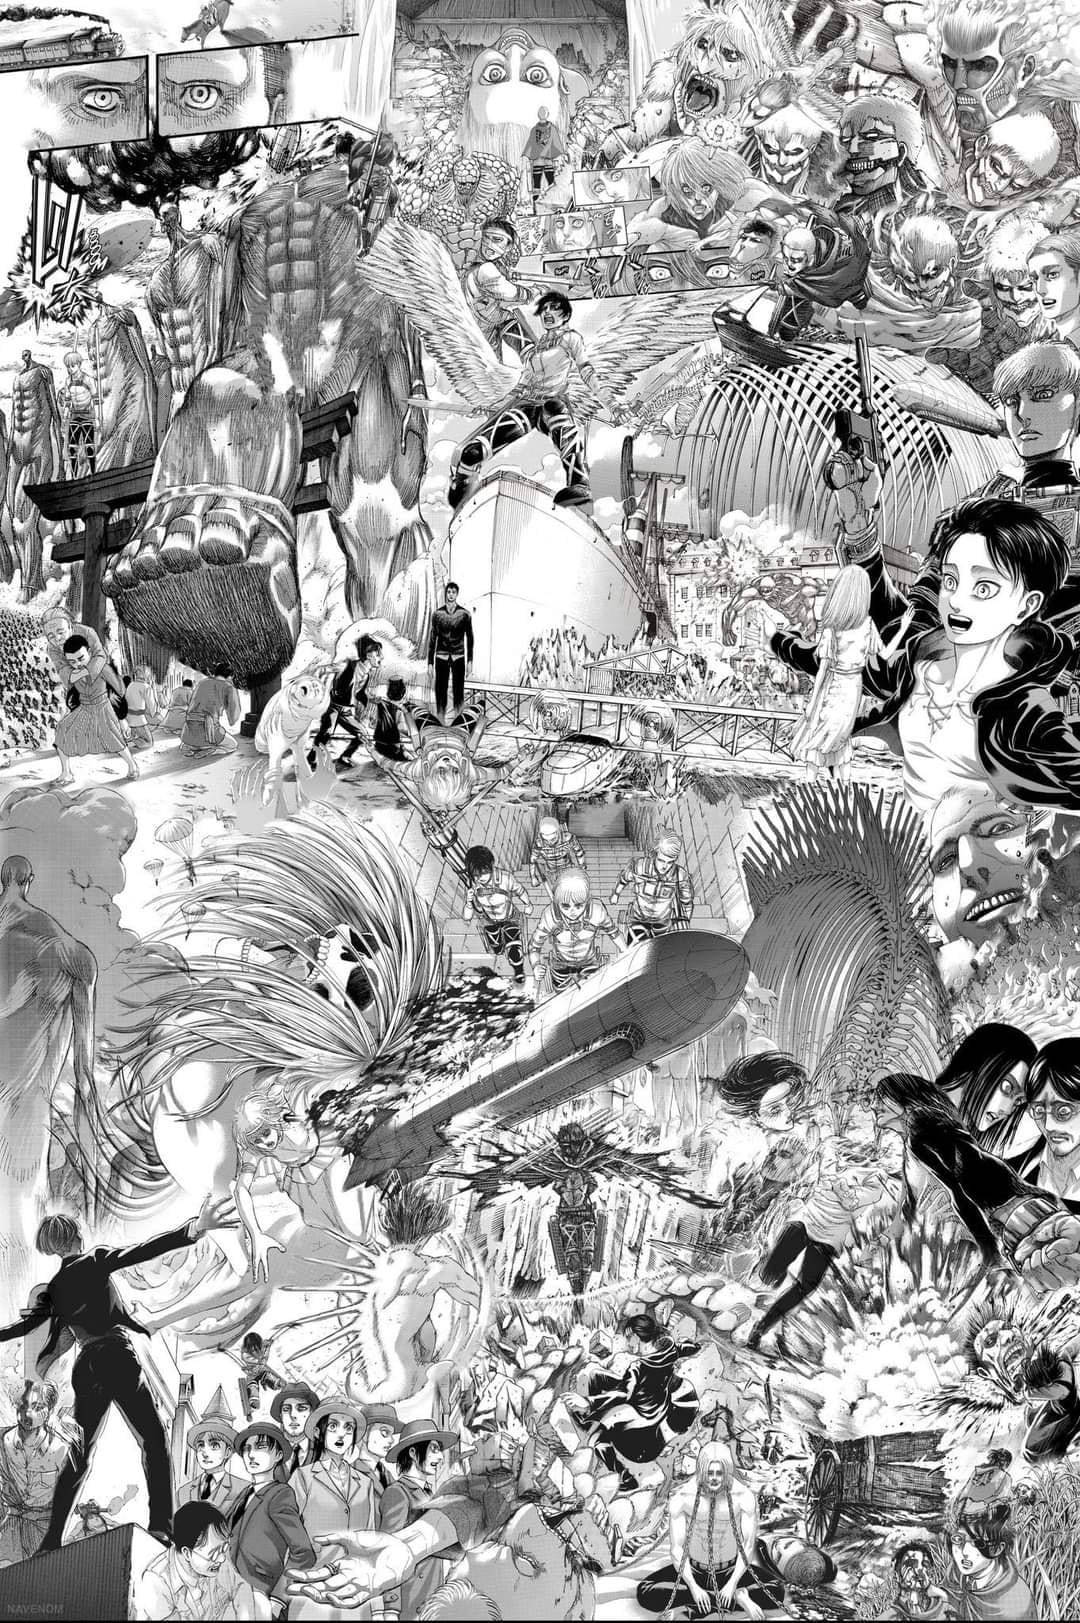 Aot Manga Billedcollage Wallpaper